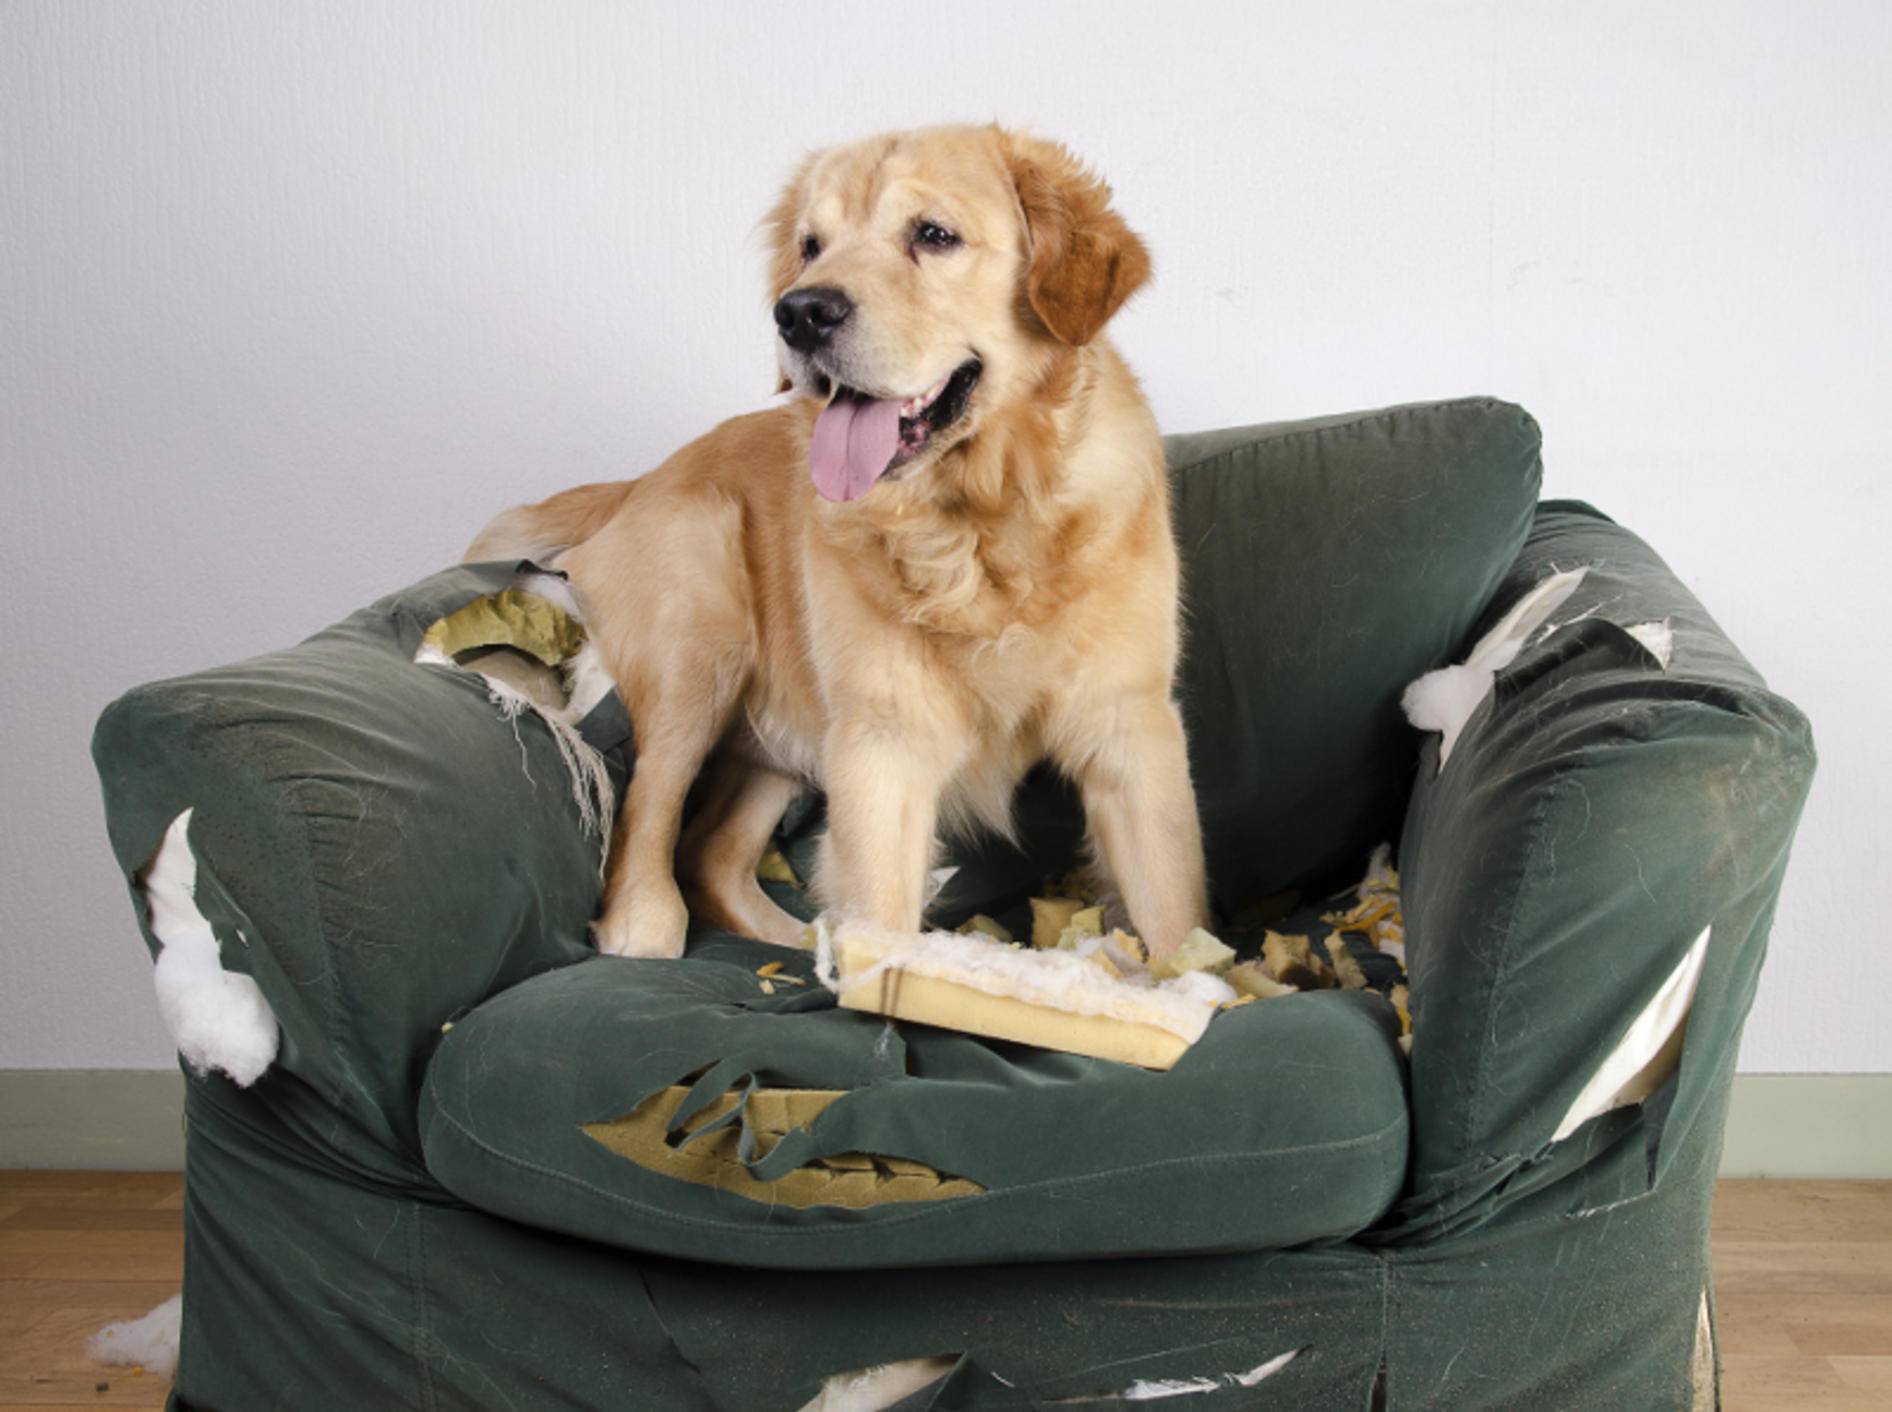 "Warum bist Du denn sauer? Gestern durfte ich doch noch auf den Sessel" – Konsequenz ist ein wichtiger Faktor in der Hundeerziehung – Shutterstock / Jeroen van den Broek